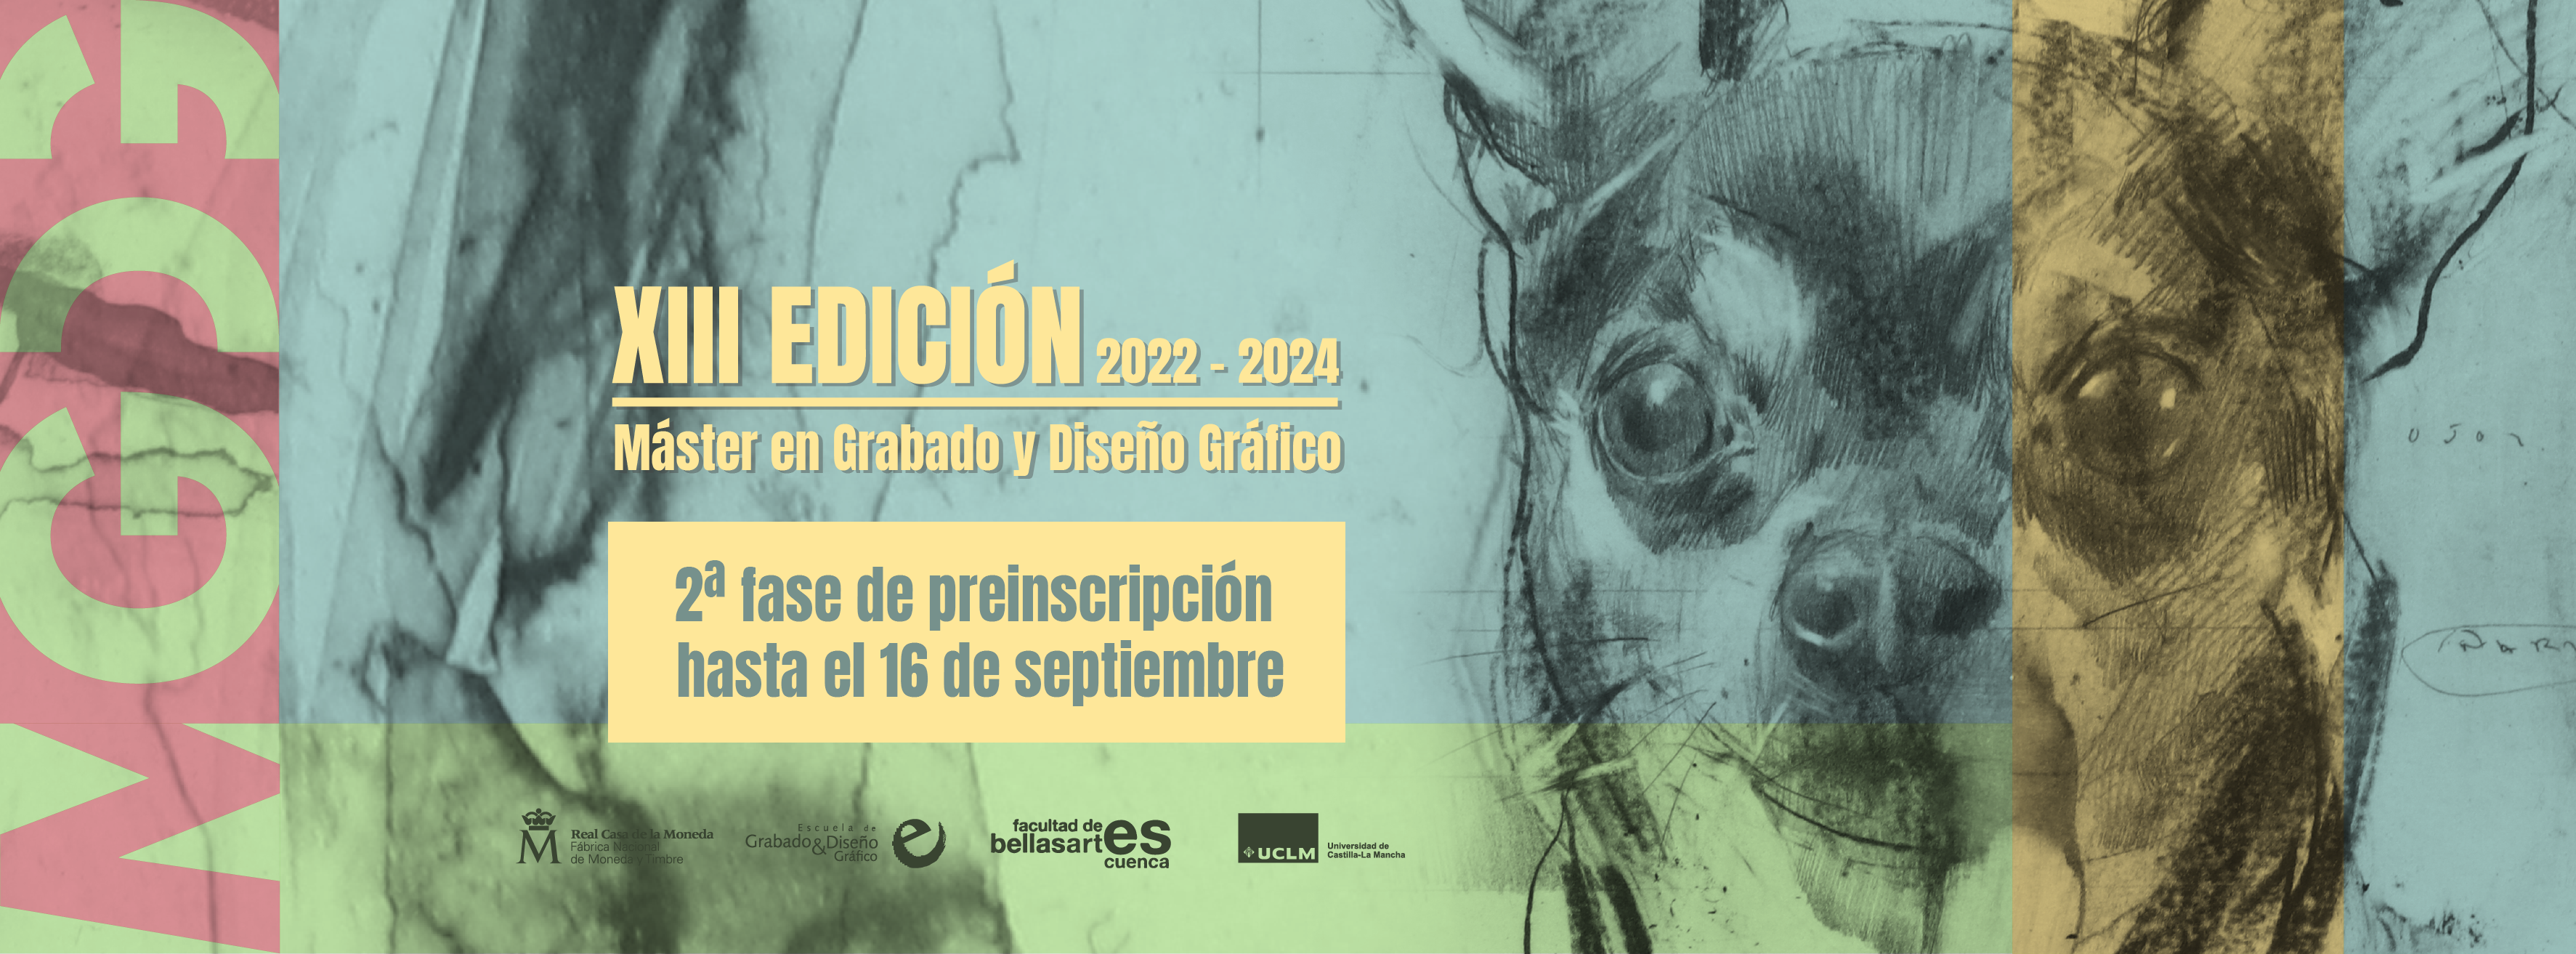 Imagen Inscripción 2022-2024